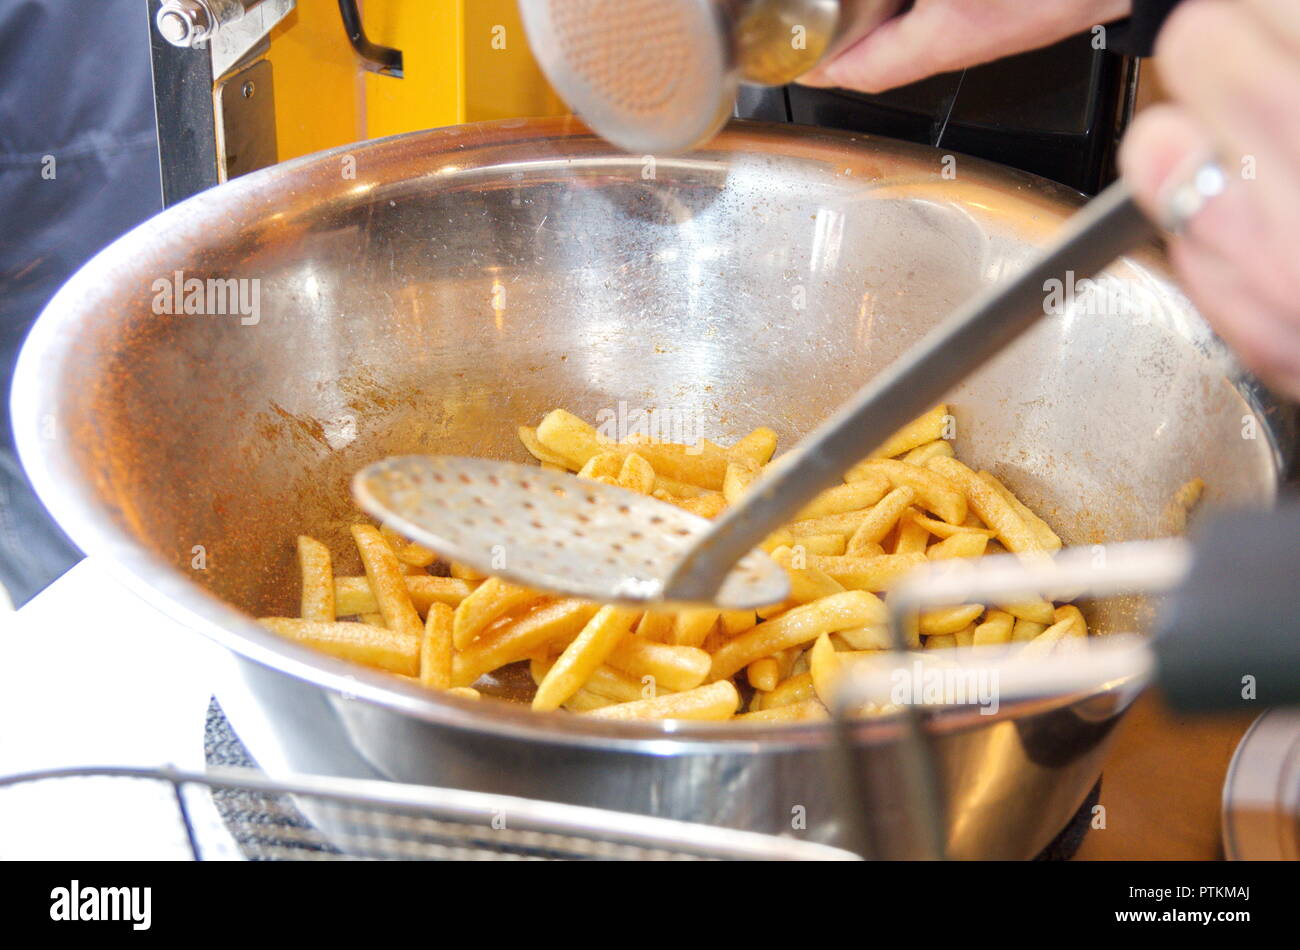 Im Foodtruck von einem Imbiss würzt jemand Pommes Frites / French Fries in einer Edelstahl Metallschüssel mit viel Salz und Paprika Gewürz Stock Photo